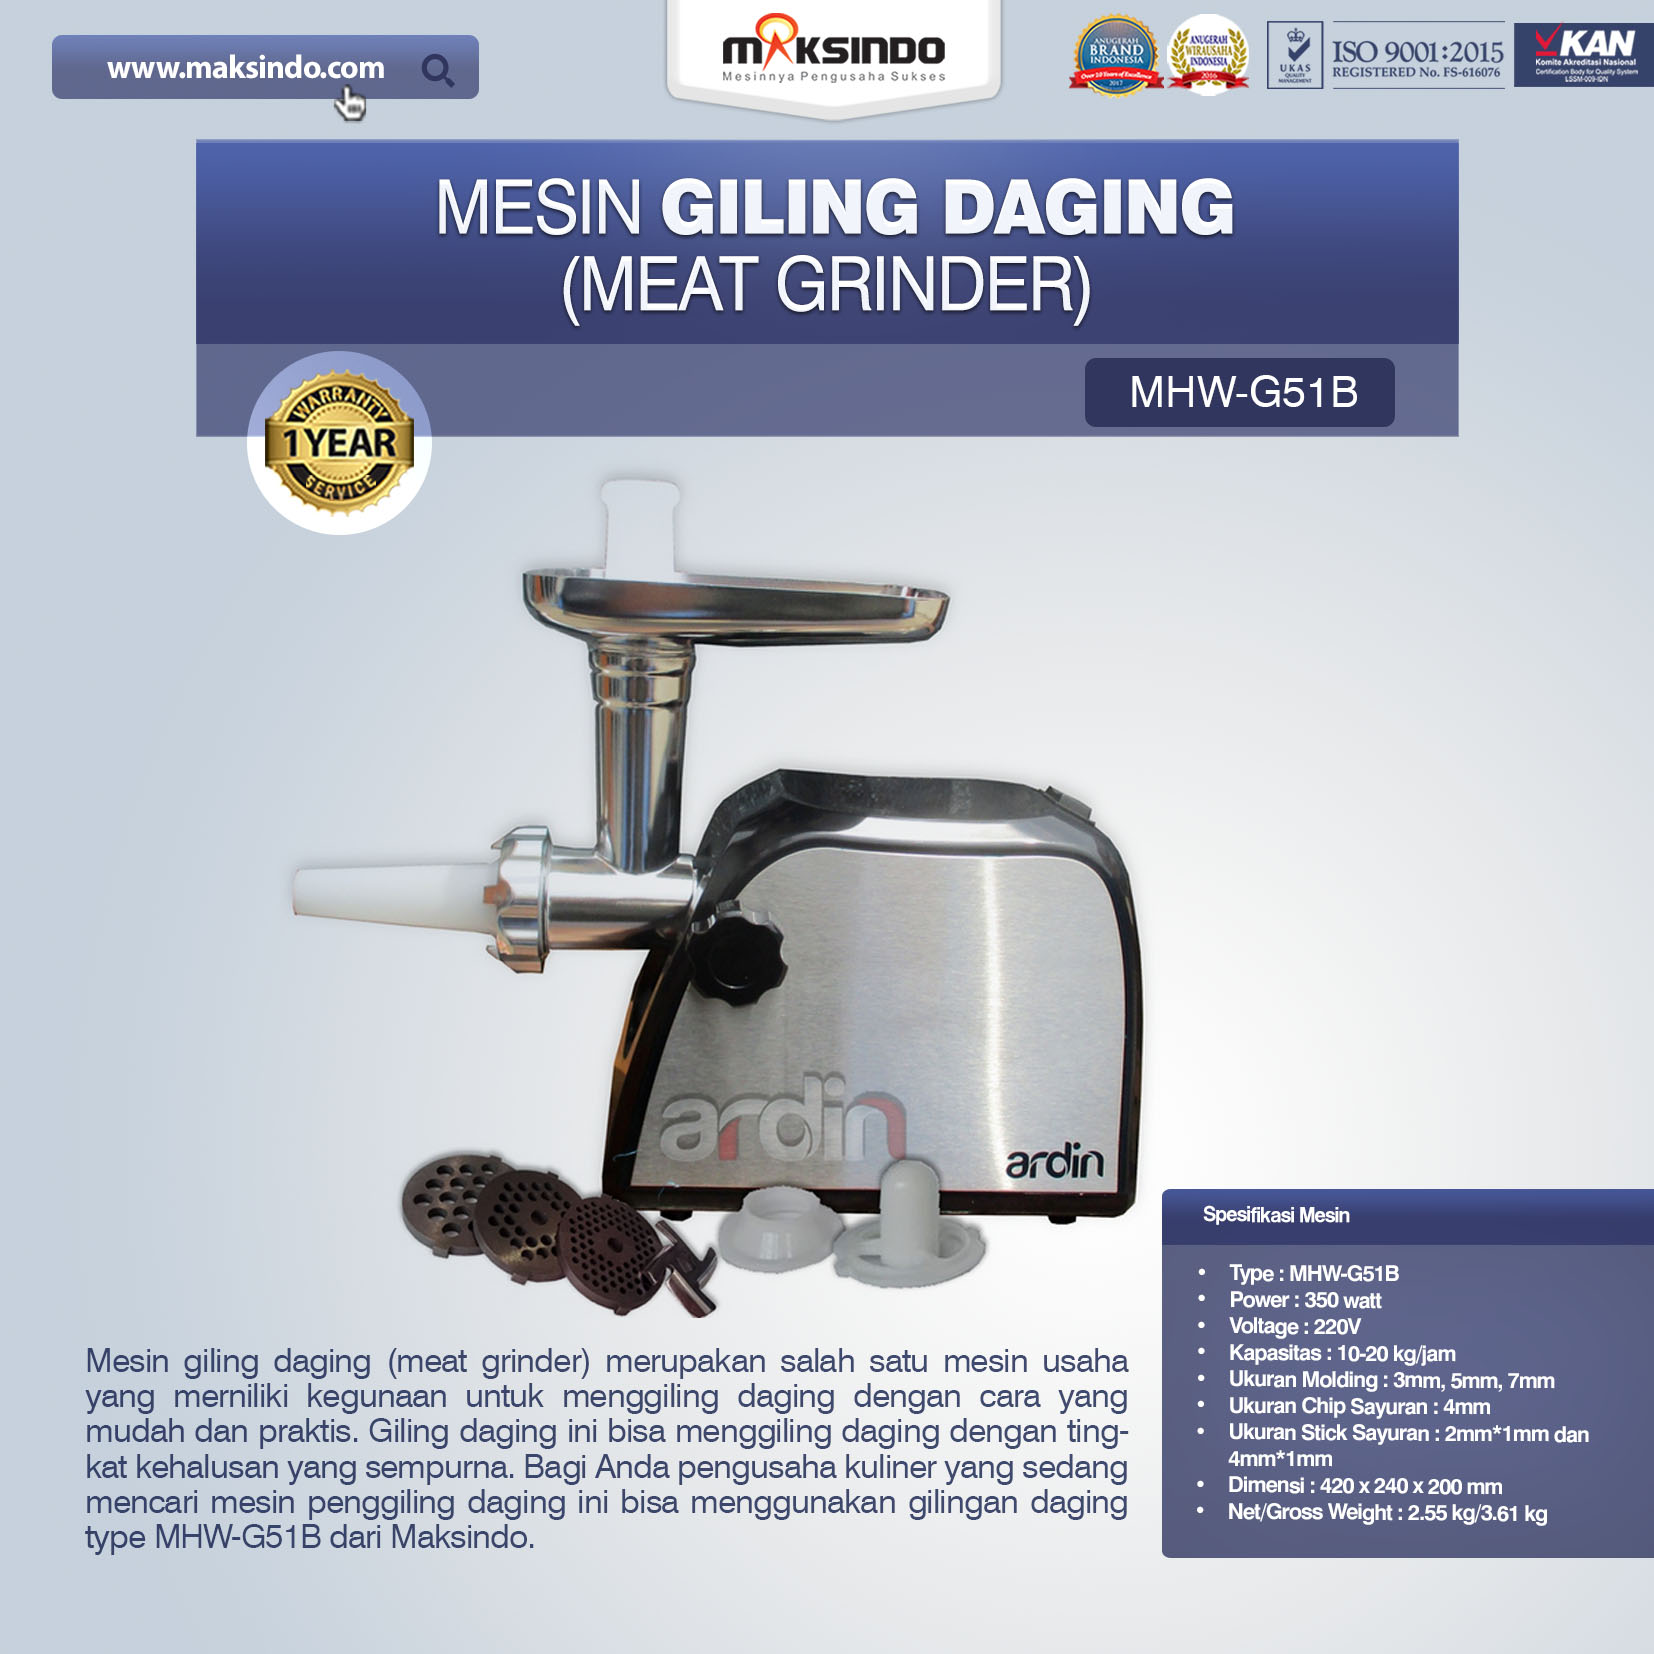 Jual Mesin Giling Daging (Meat Grinder) MHW-G51B di Bali